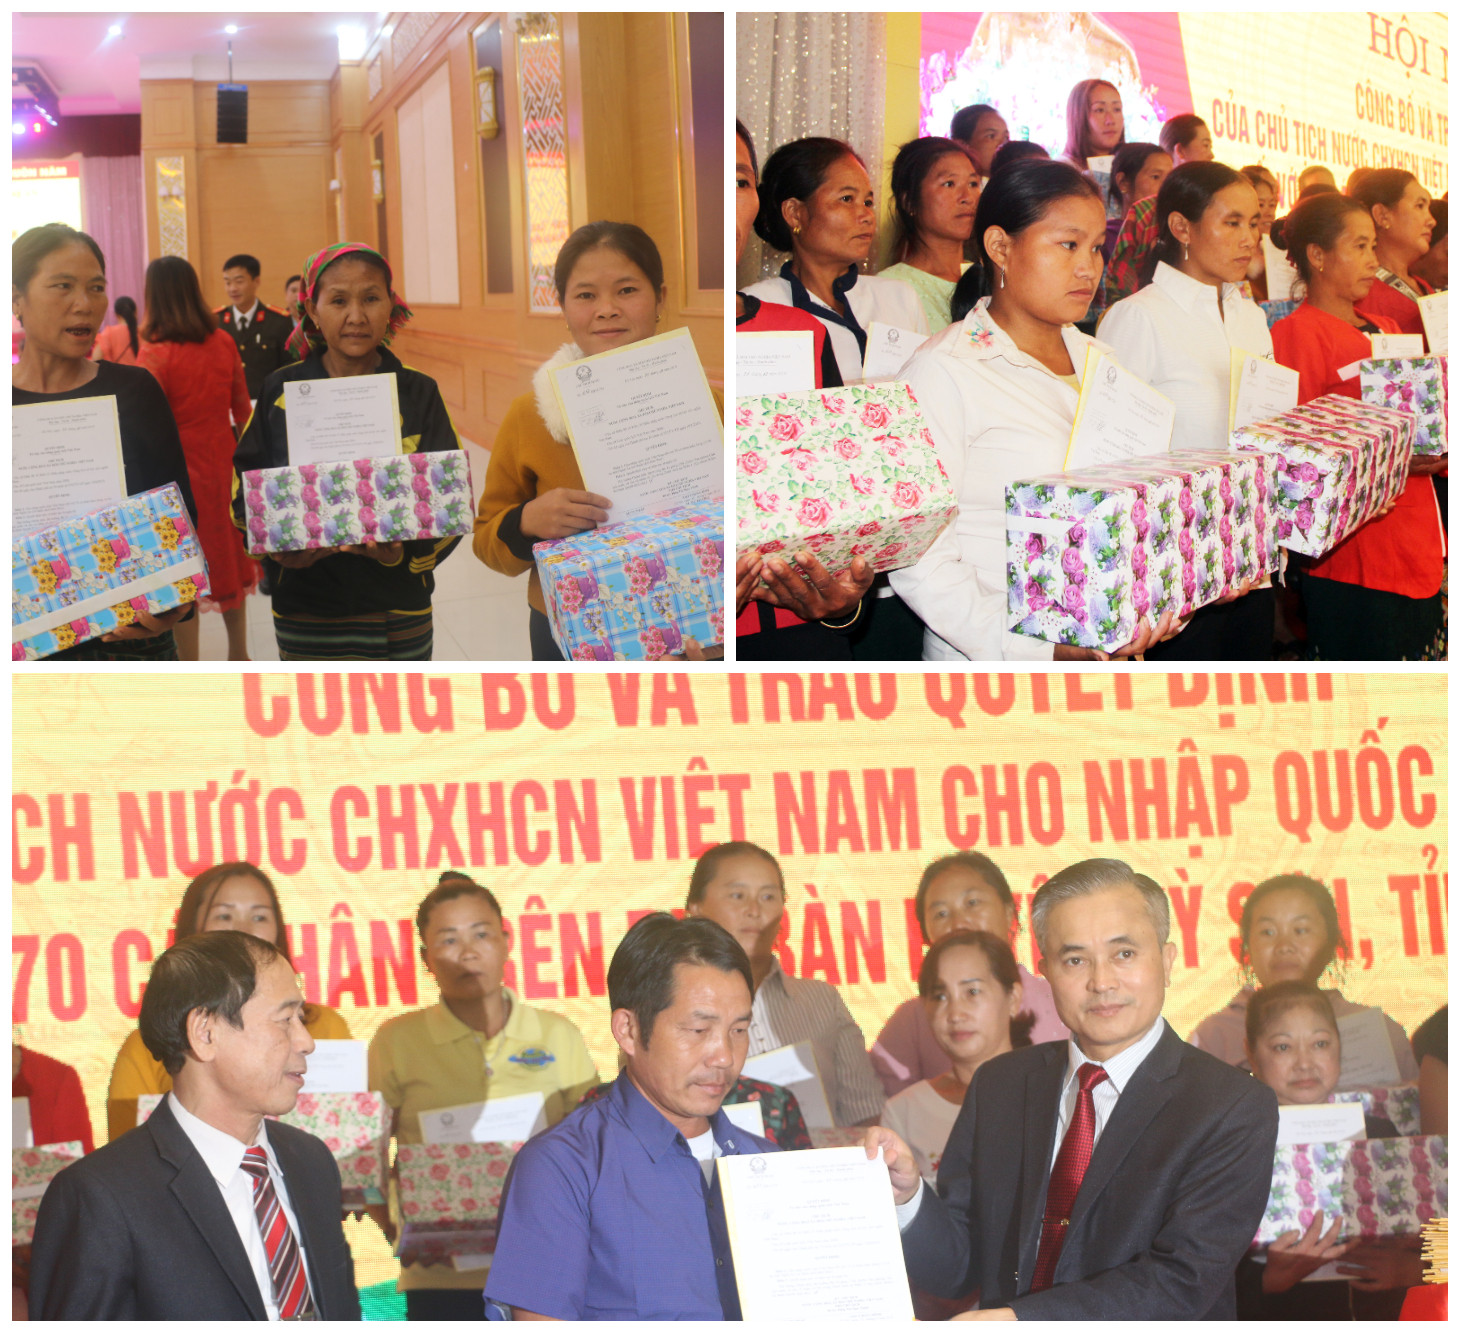 Lãnh đạo tỉnh Nghệ An trao quyết định công nhận Quốc tịch Việt Nam cho các công dân Lào. Ảnh: K.L